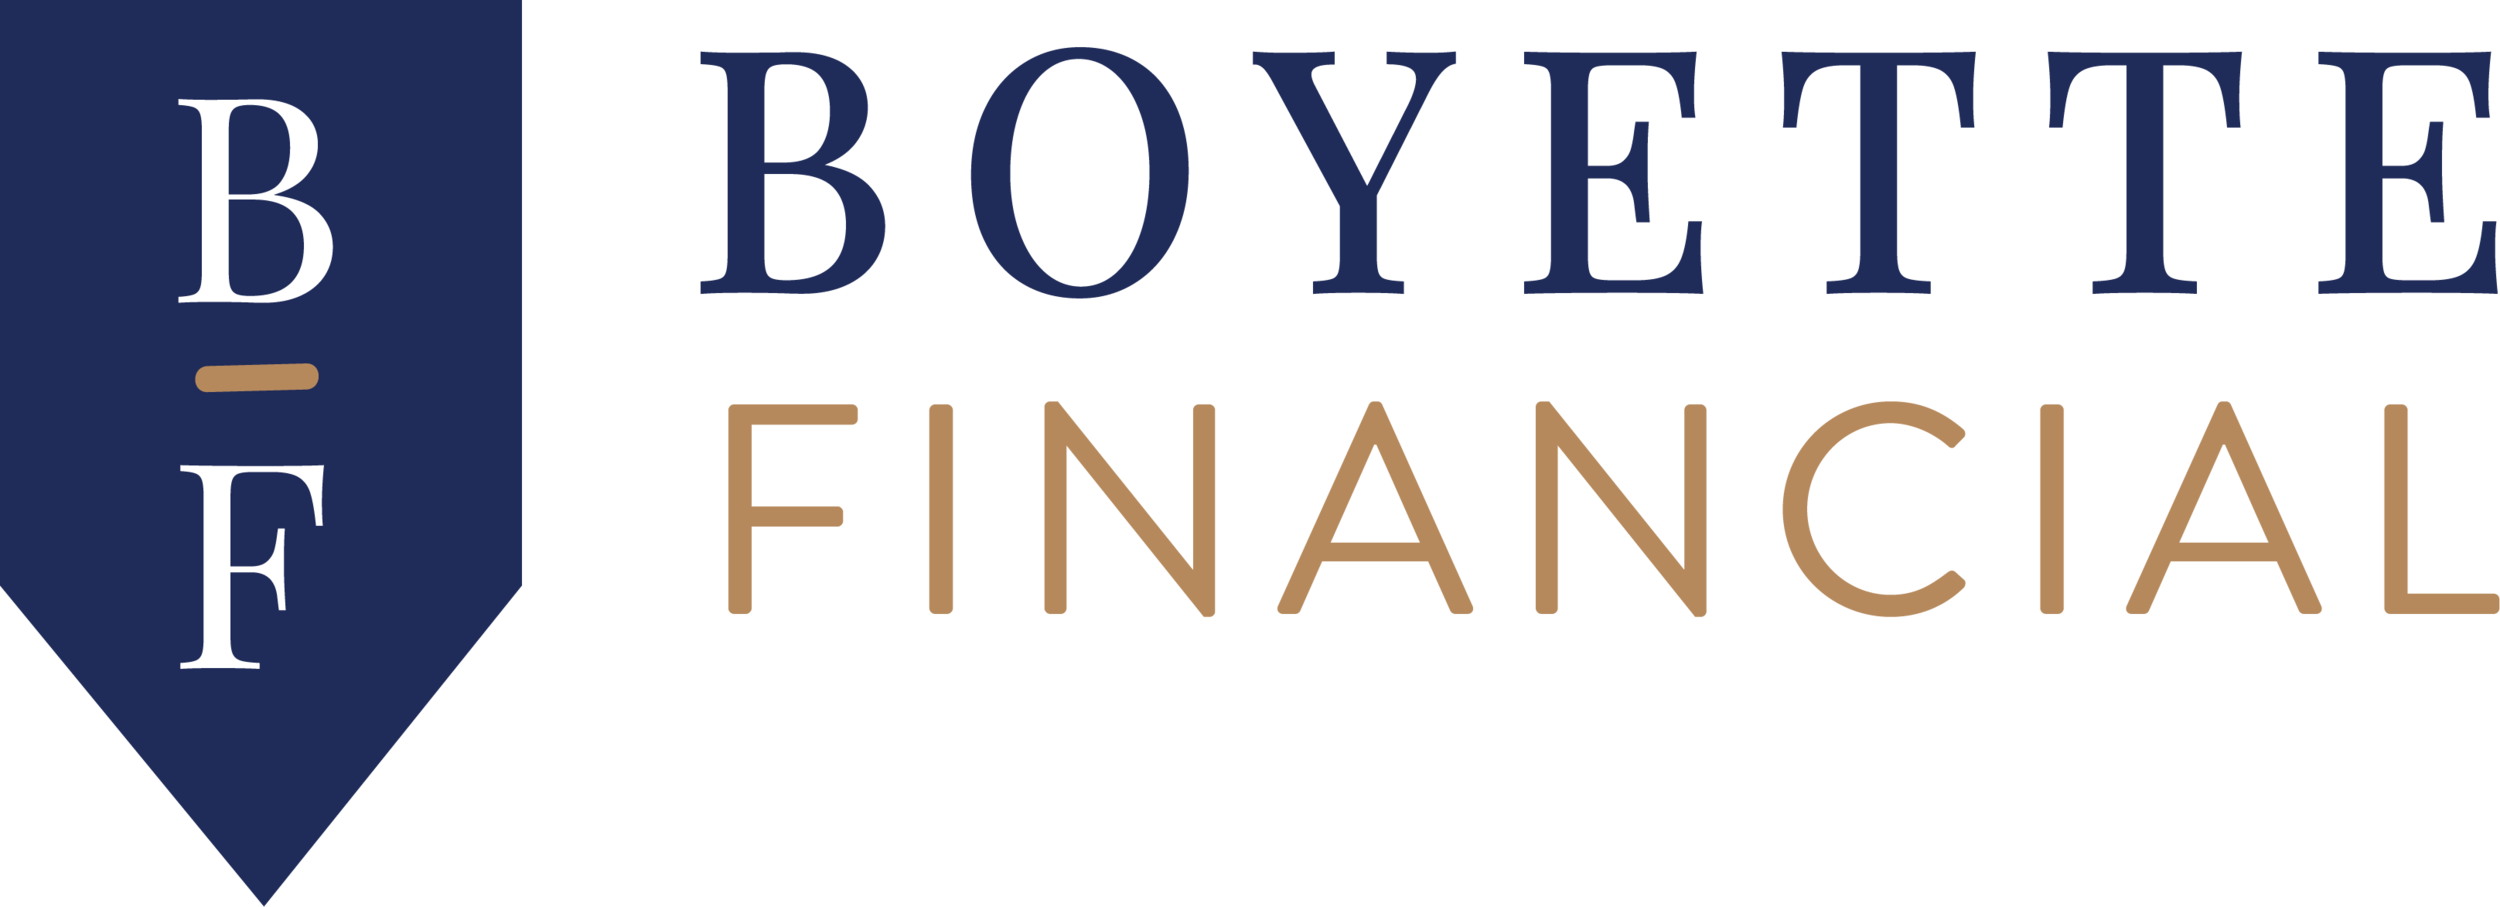 Boyette Financial